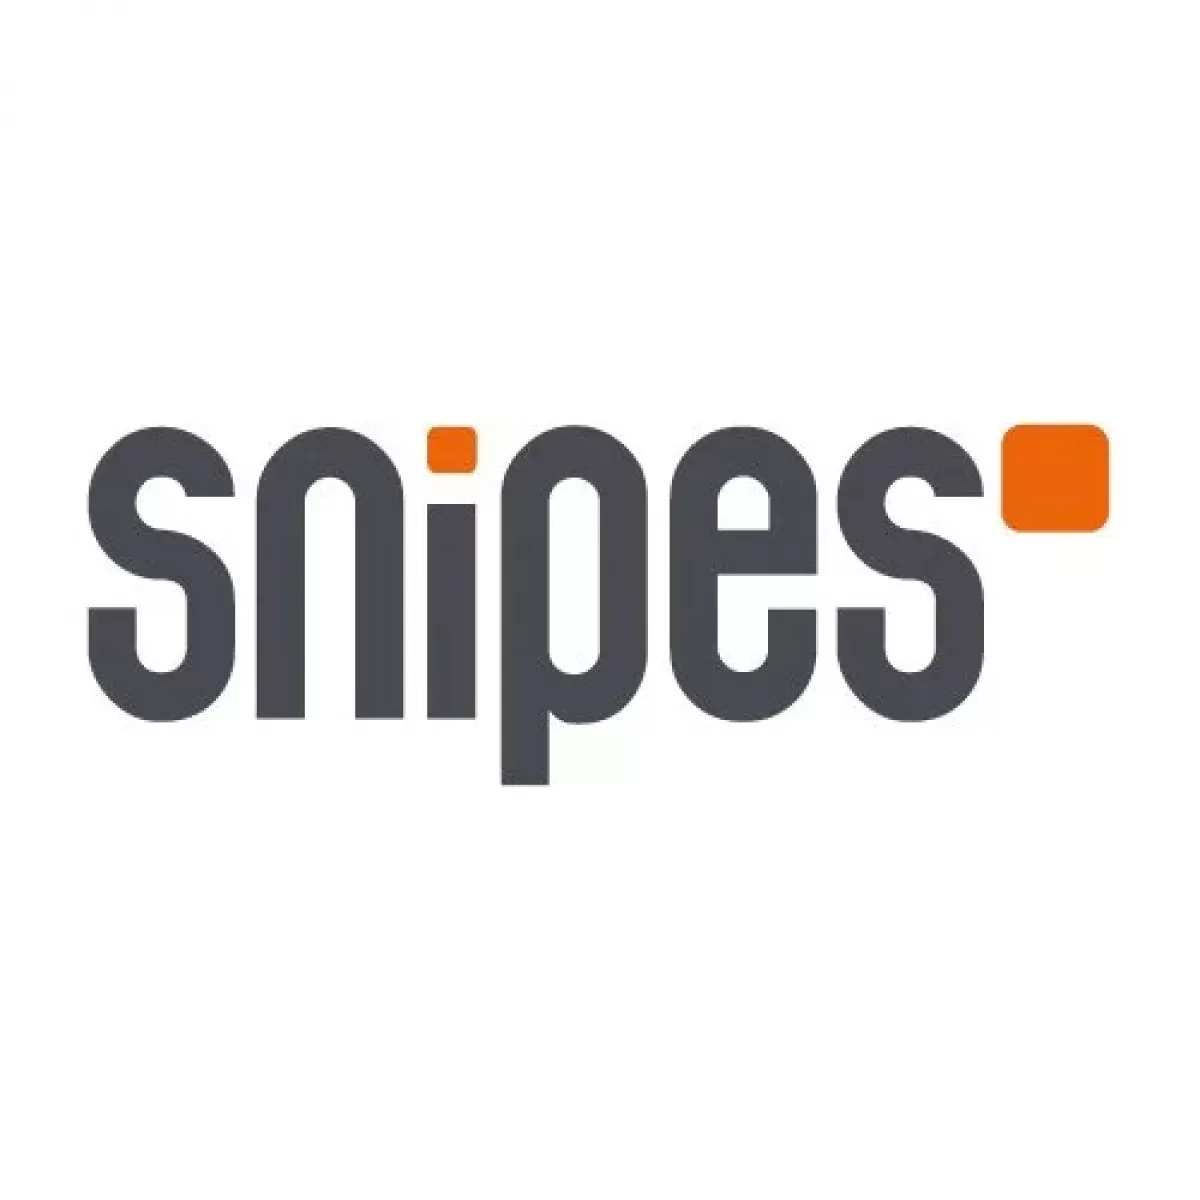 Snipesusa.com